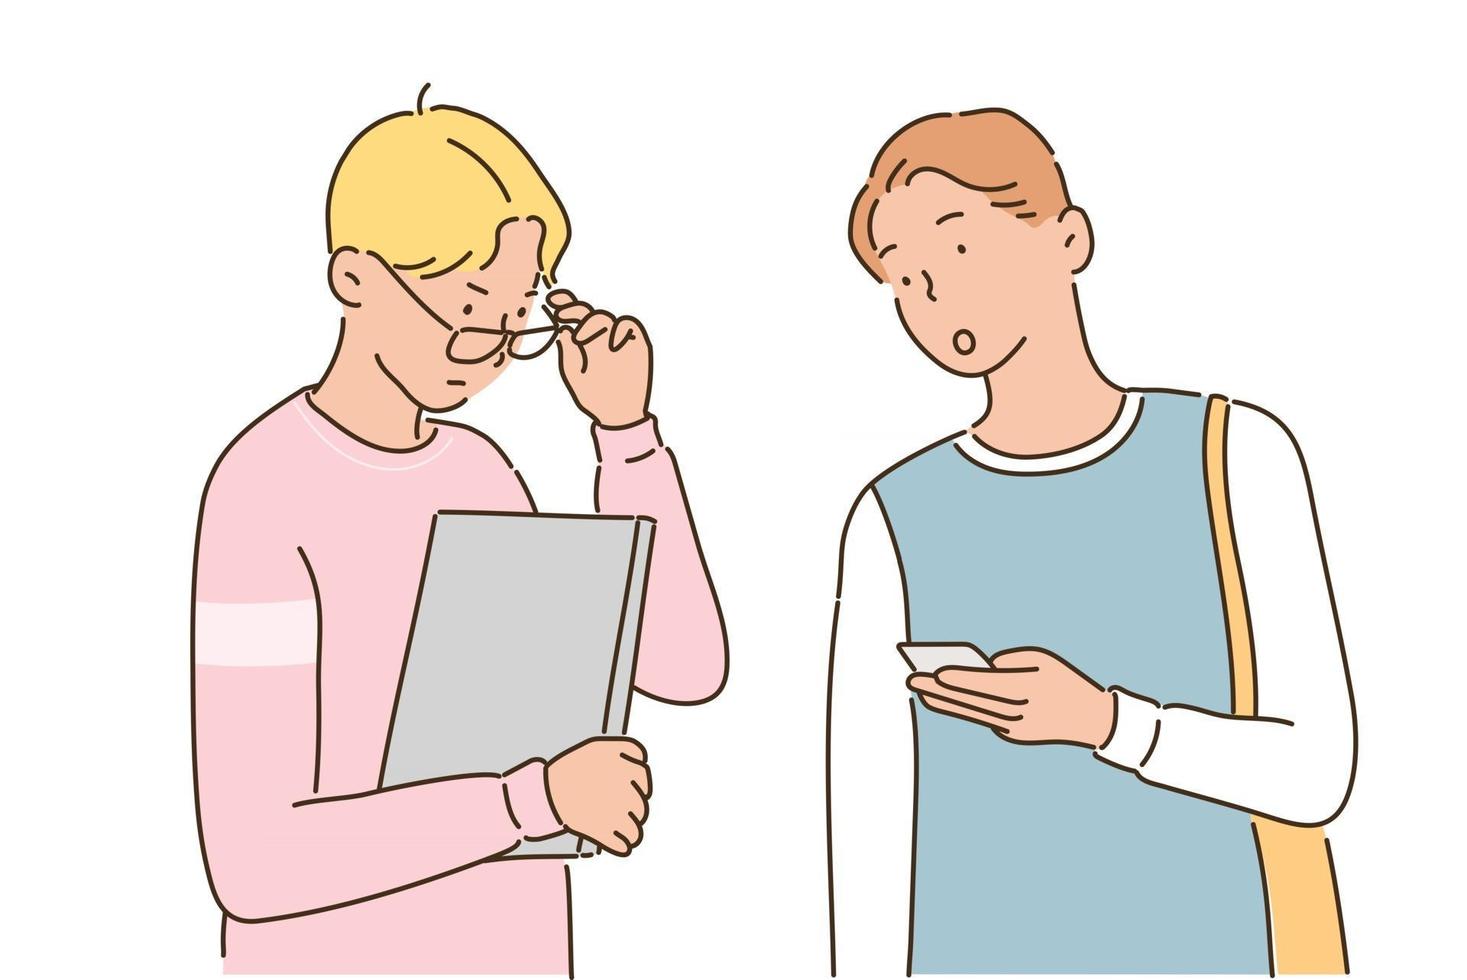 två manliga studenter har en konversation med en bärbar dator och en mobiltelefon i sina händer. handritade illustrationer för stilvektordesign. vektor